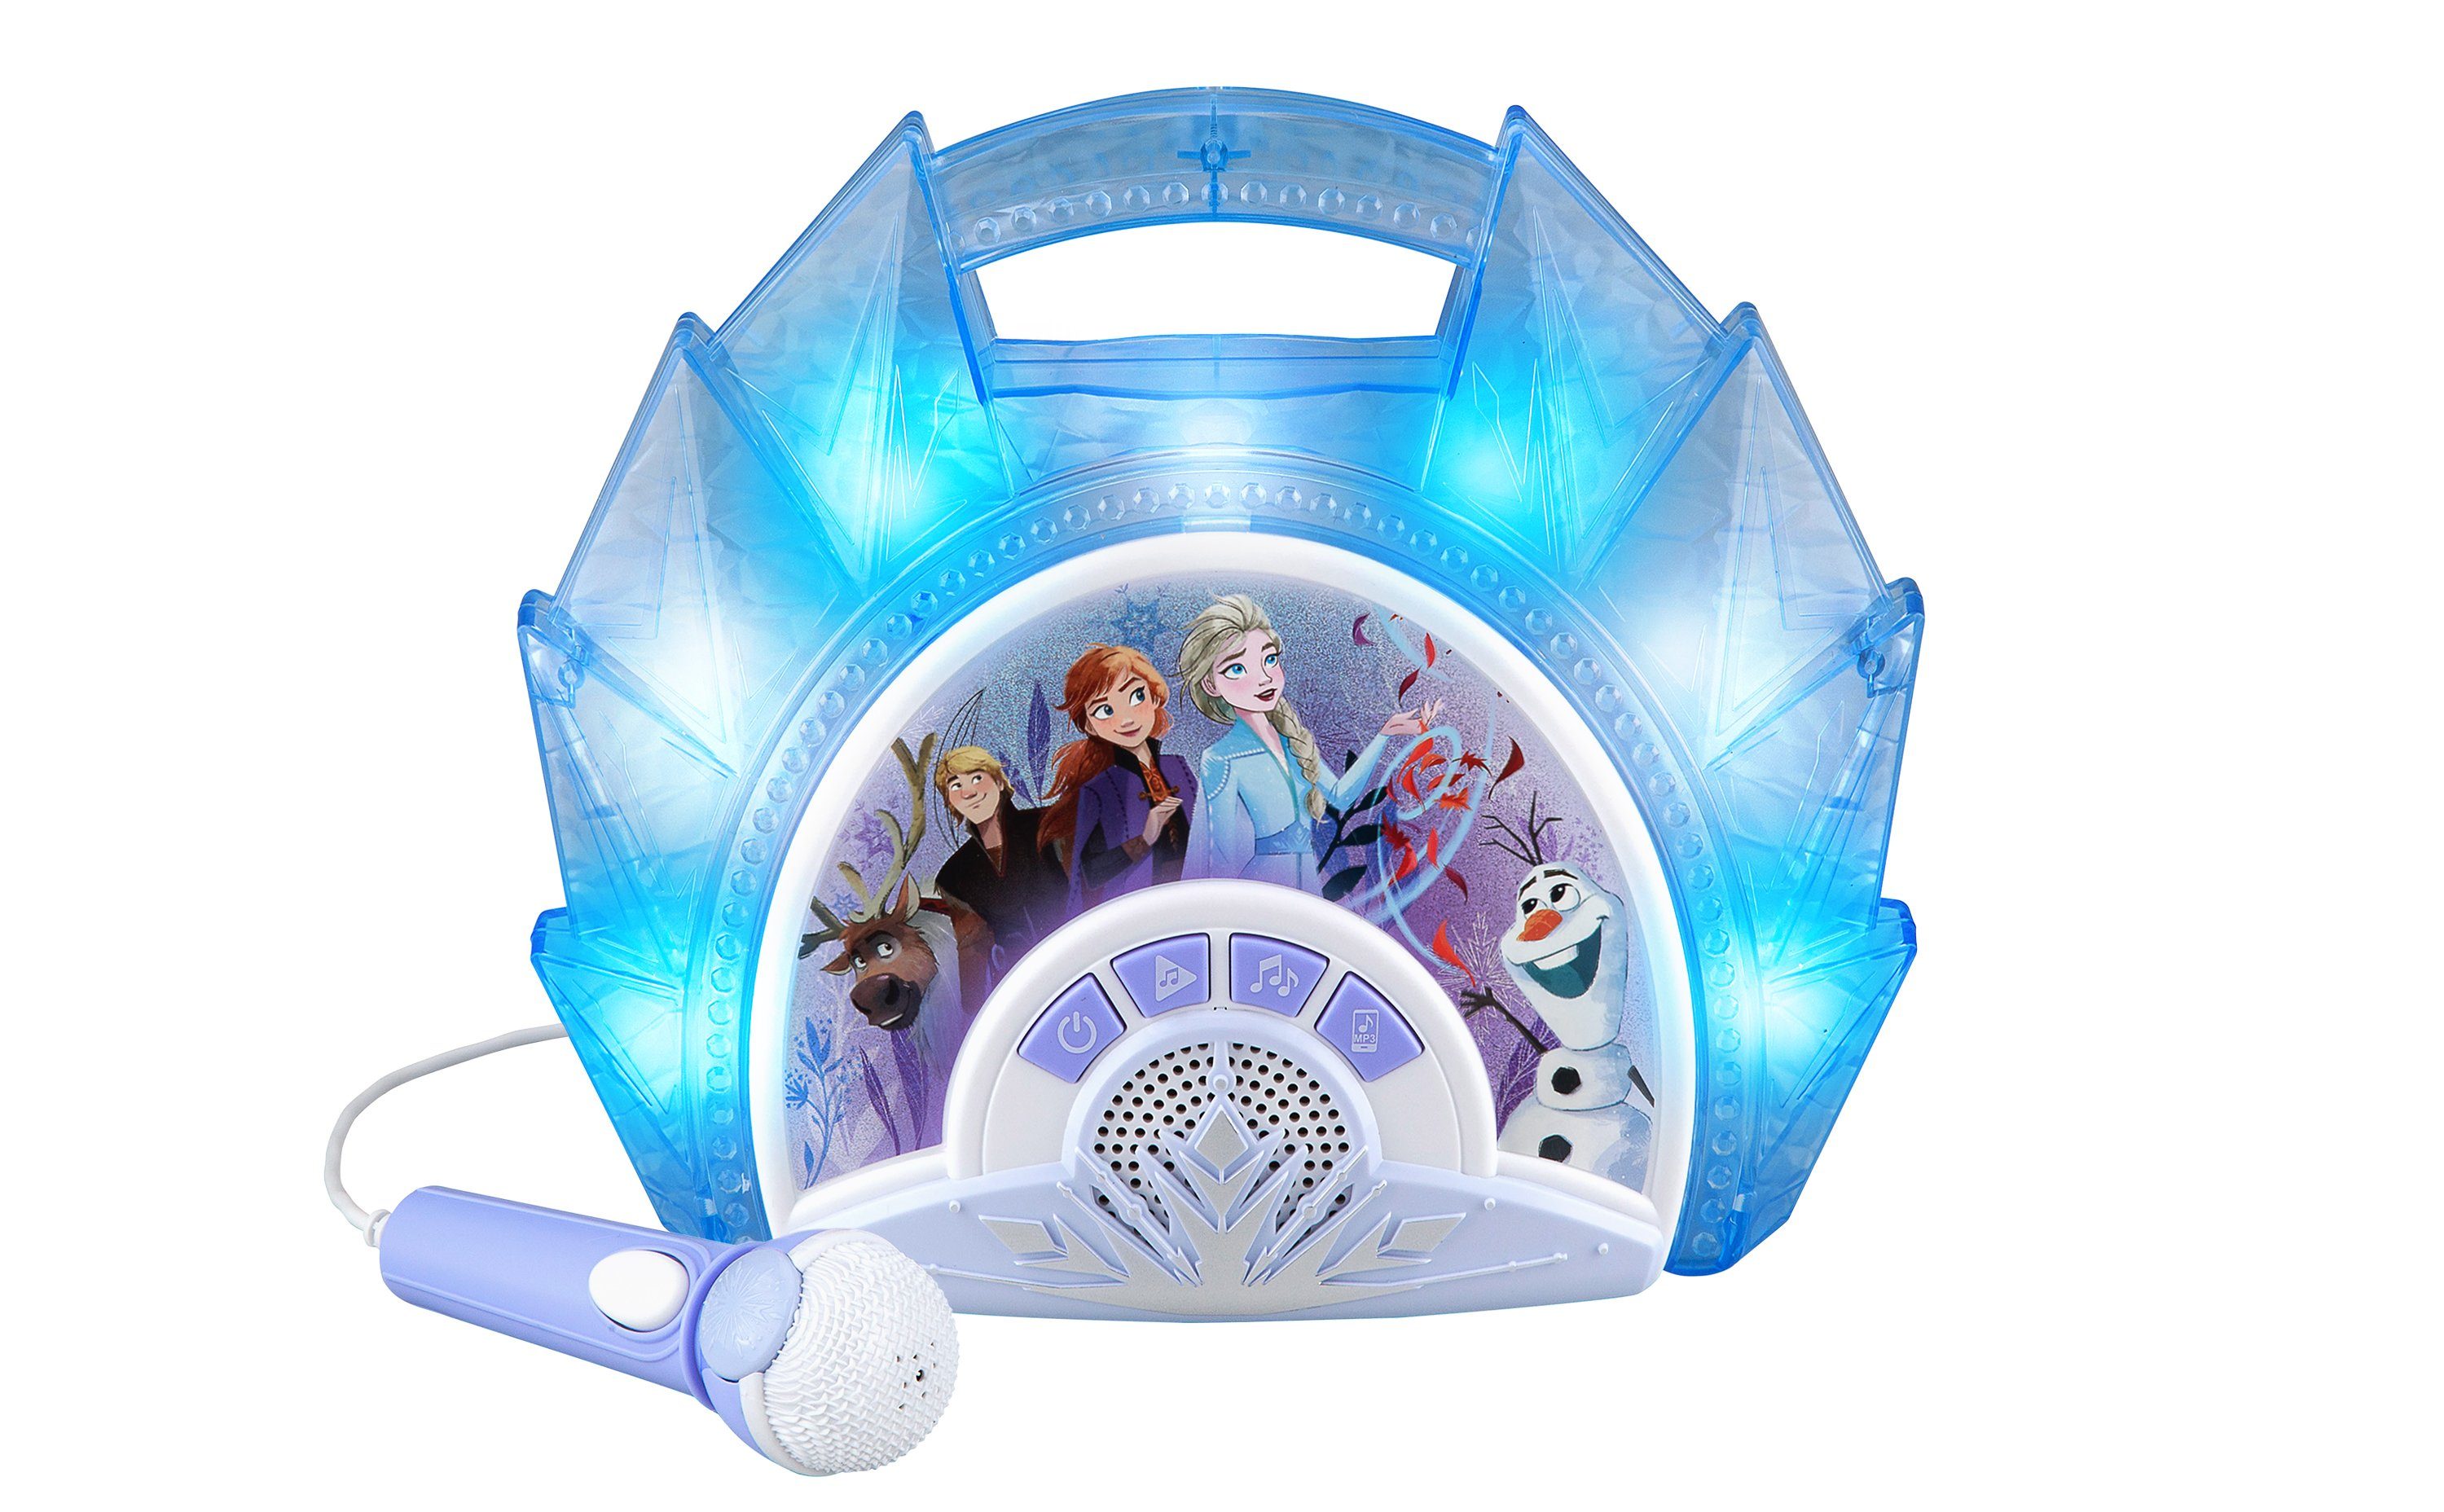 eKids Spielzeug-Musikinstrument »Disney Eiskönigin 2 / Frozen 2 Karaoke  Maschine mit Mikrofon für Kinder - eKids FR-115V2«, Mit Licht und  Soundeffekten, Mikrofon online kaufen | OTTO